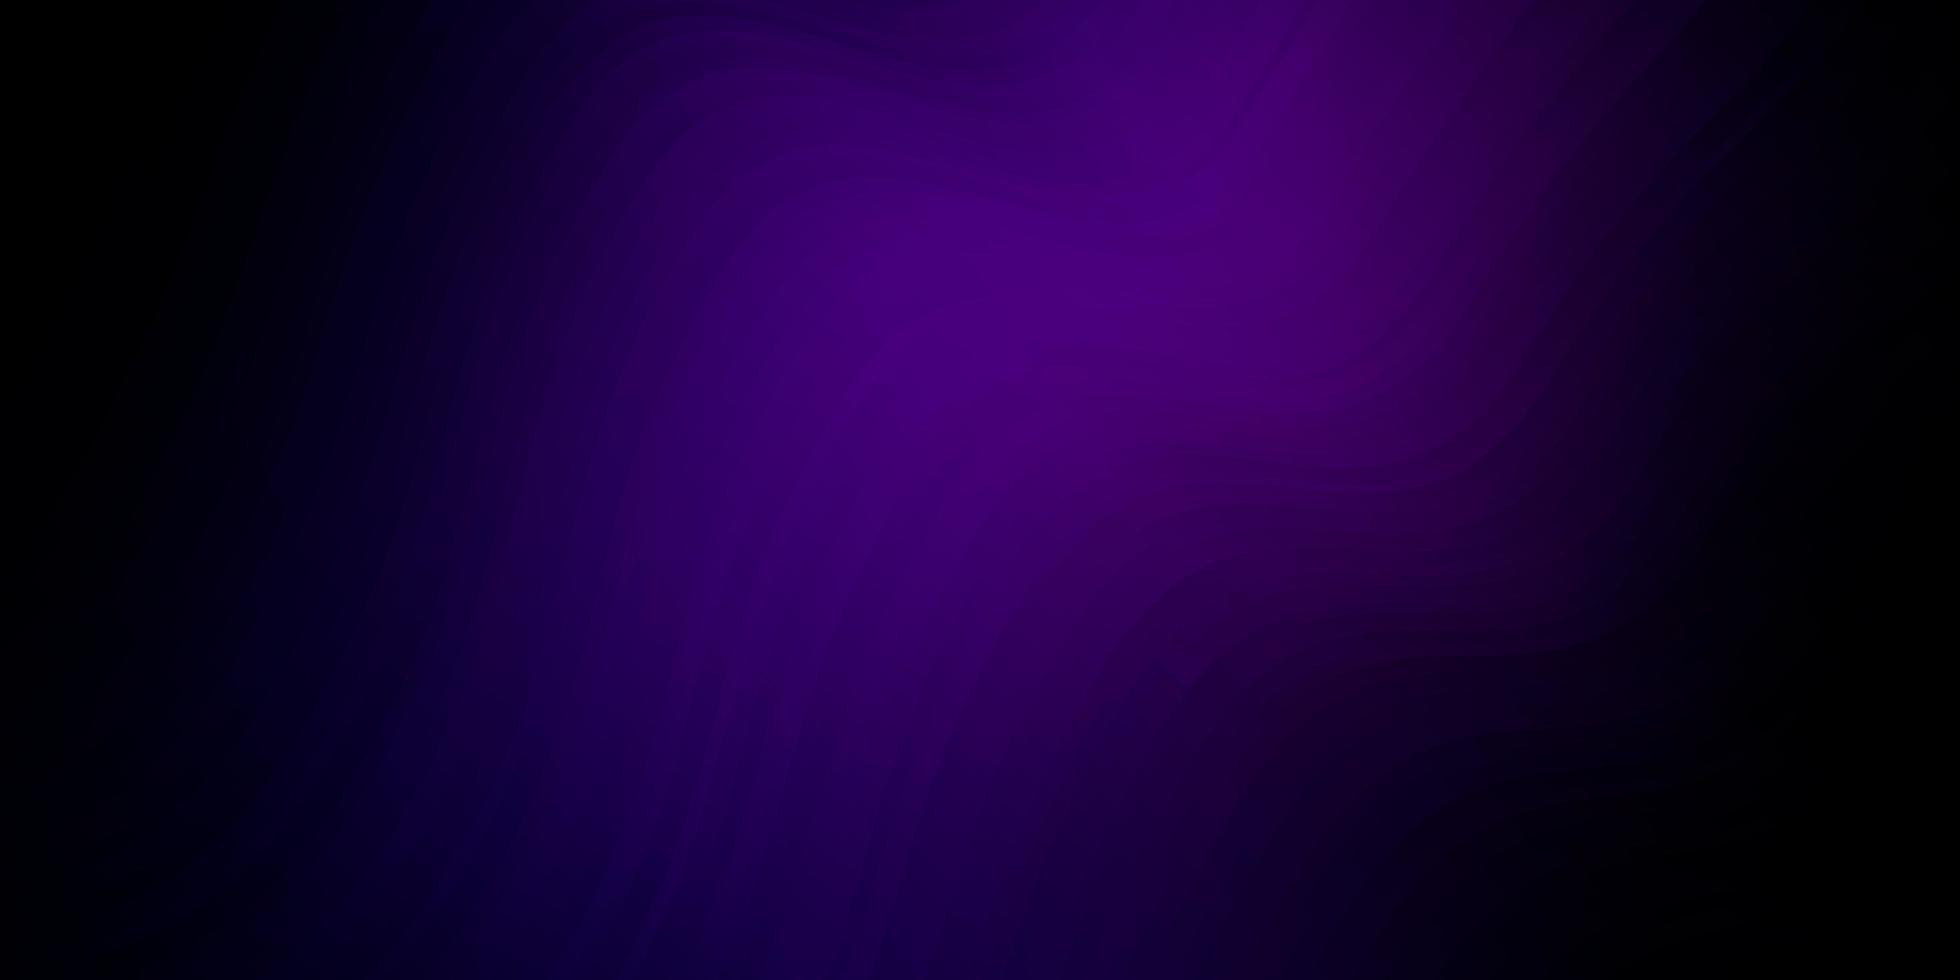 Fondo de vector púrpura oscuro con líneas dobladas